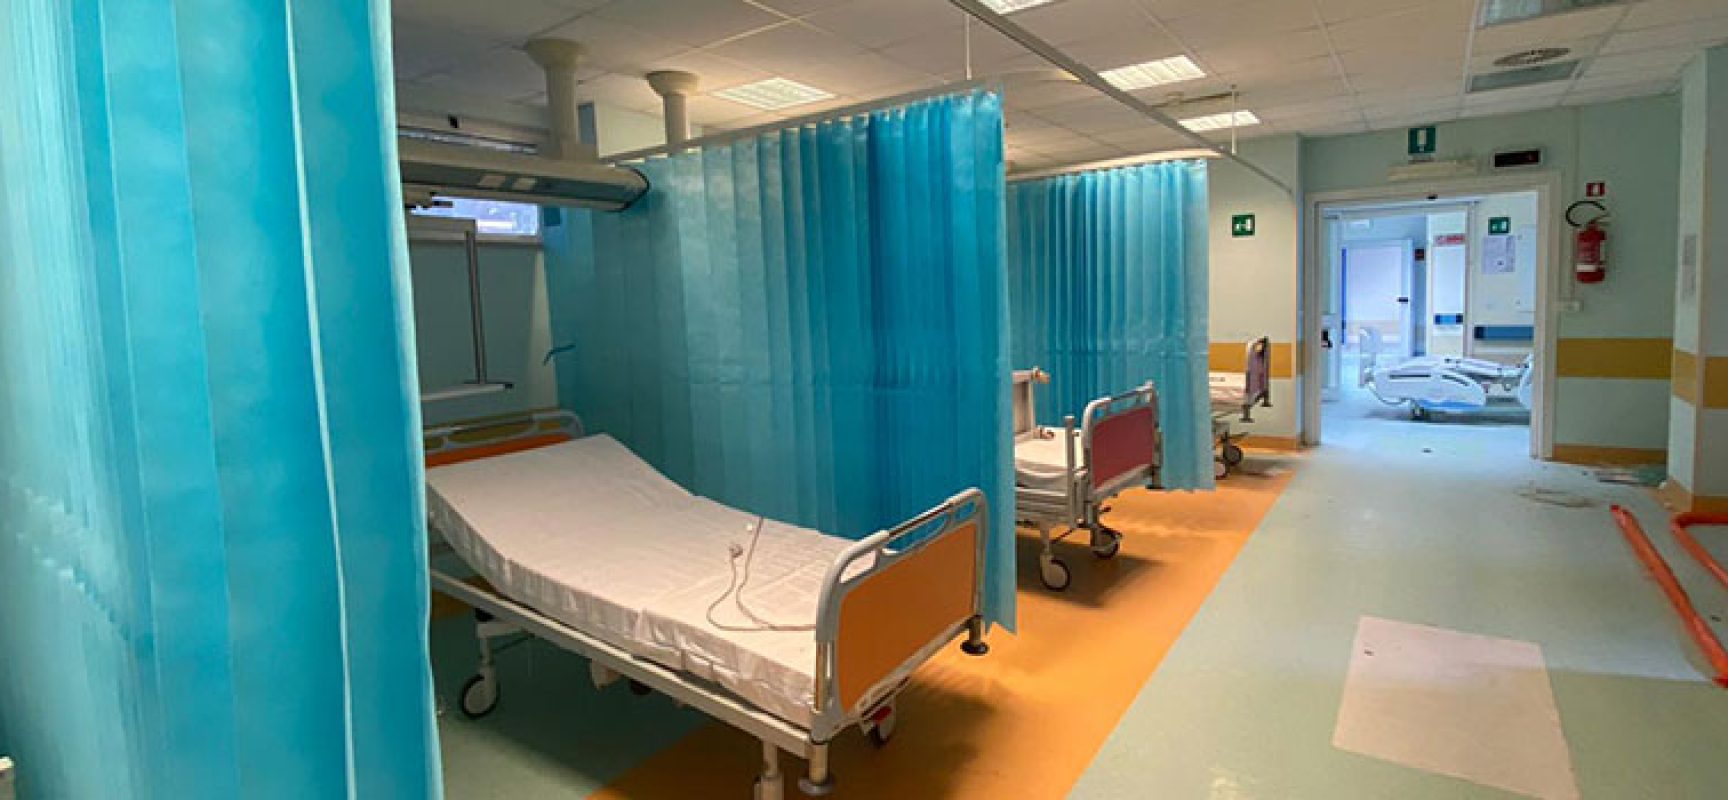 Ospedale Bisceglie: da oggi rimodulazione posti letto covid in favore di altri reparti / DETTAGLI